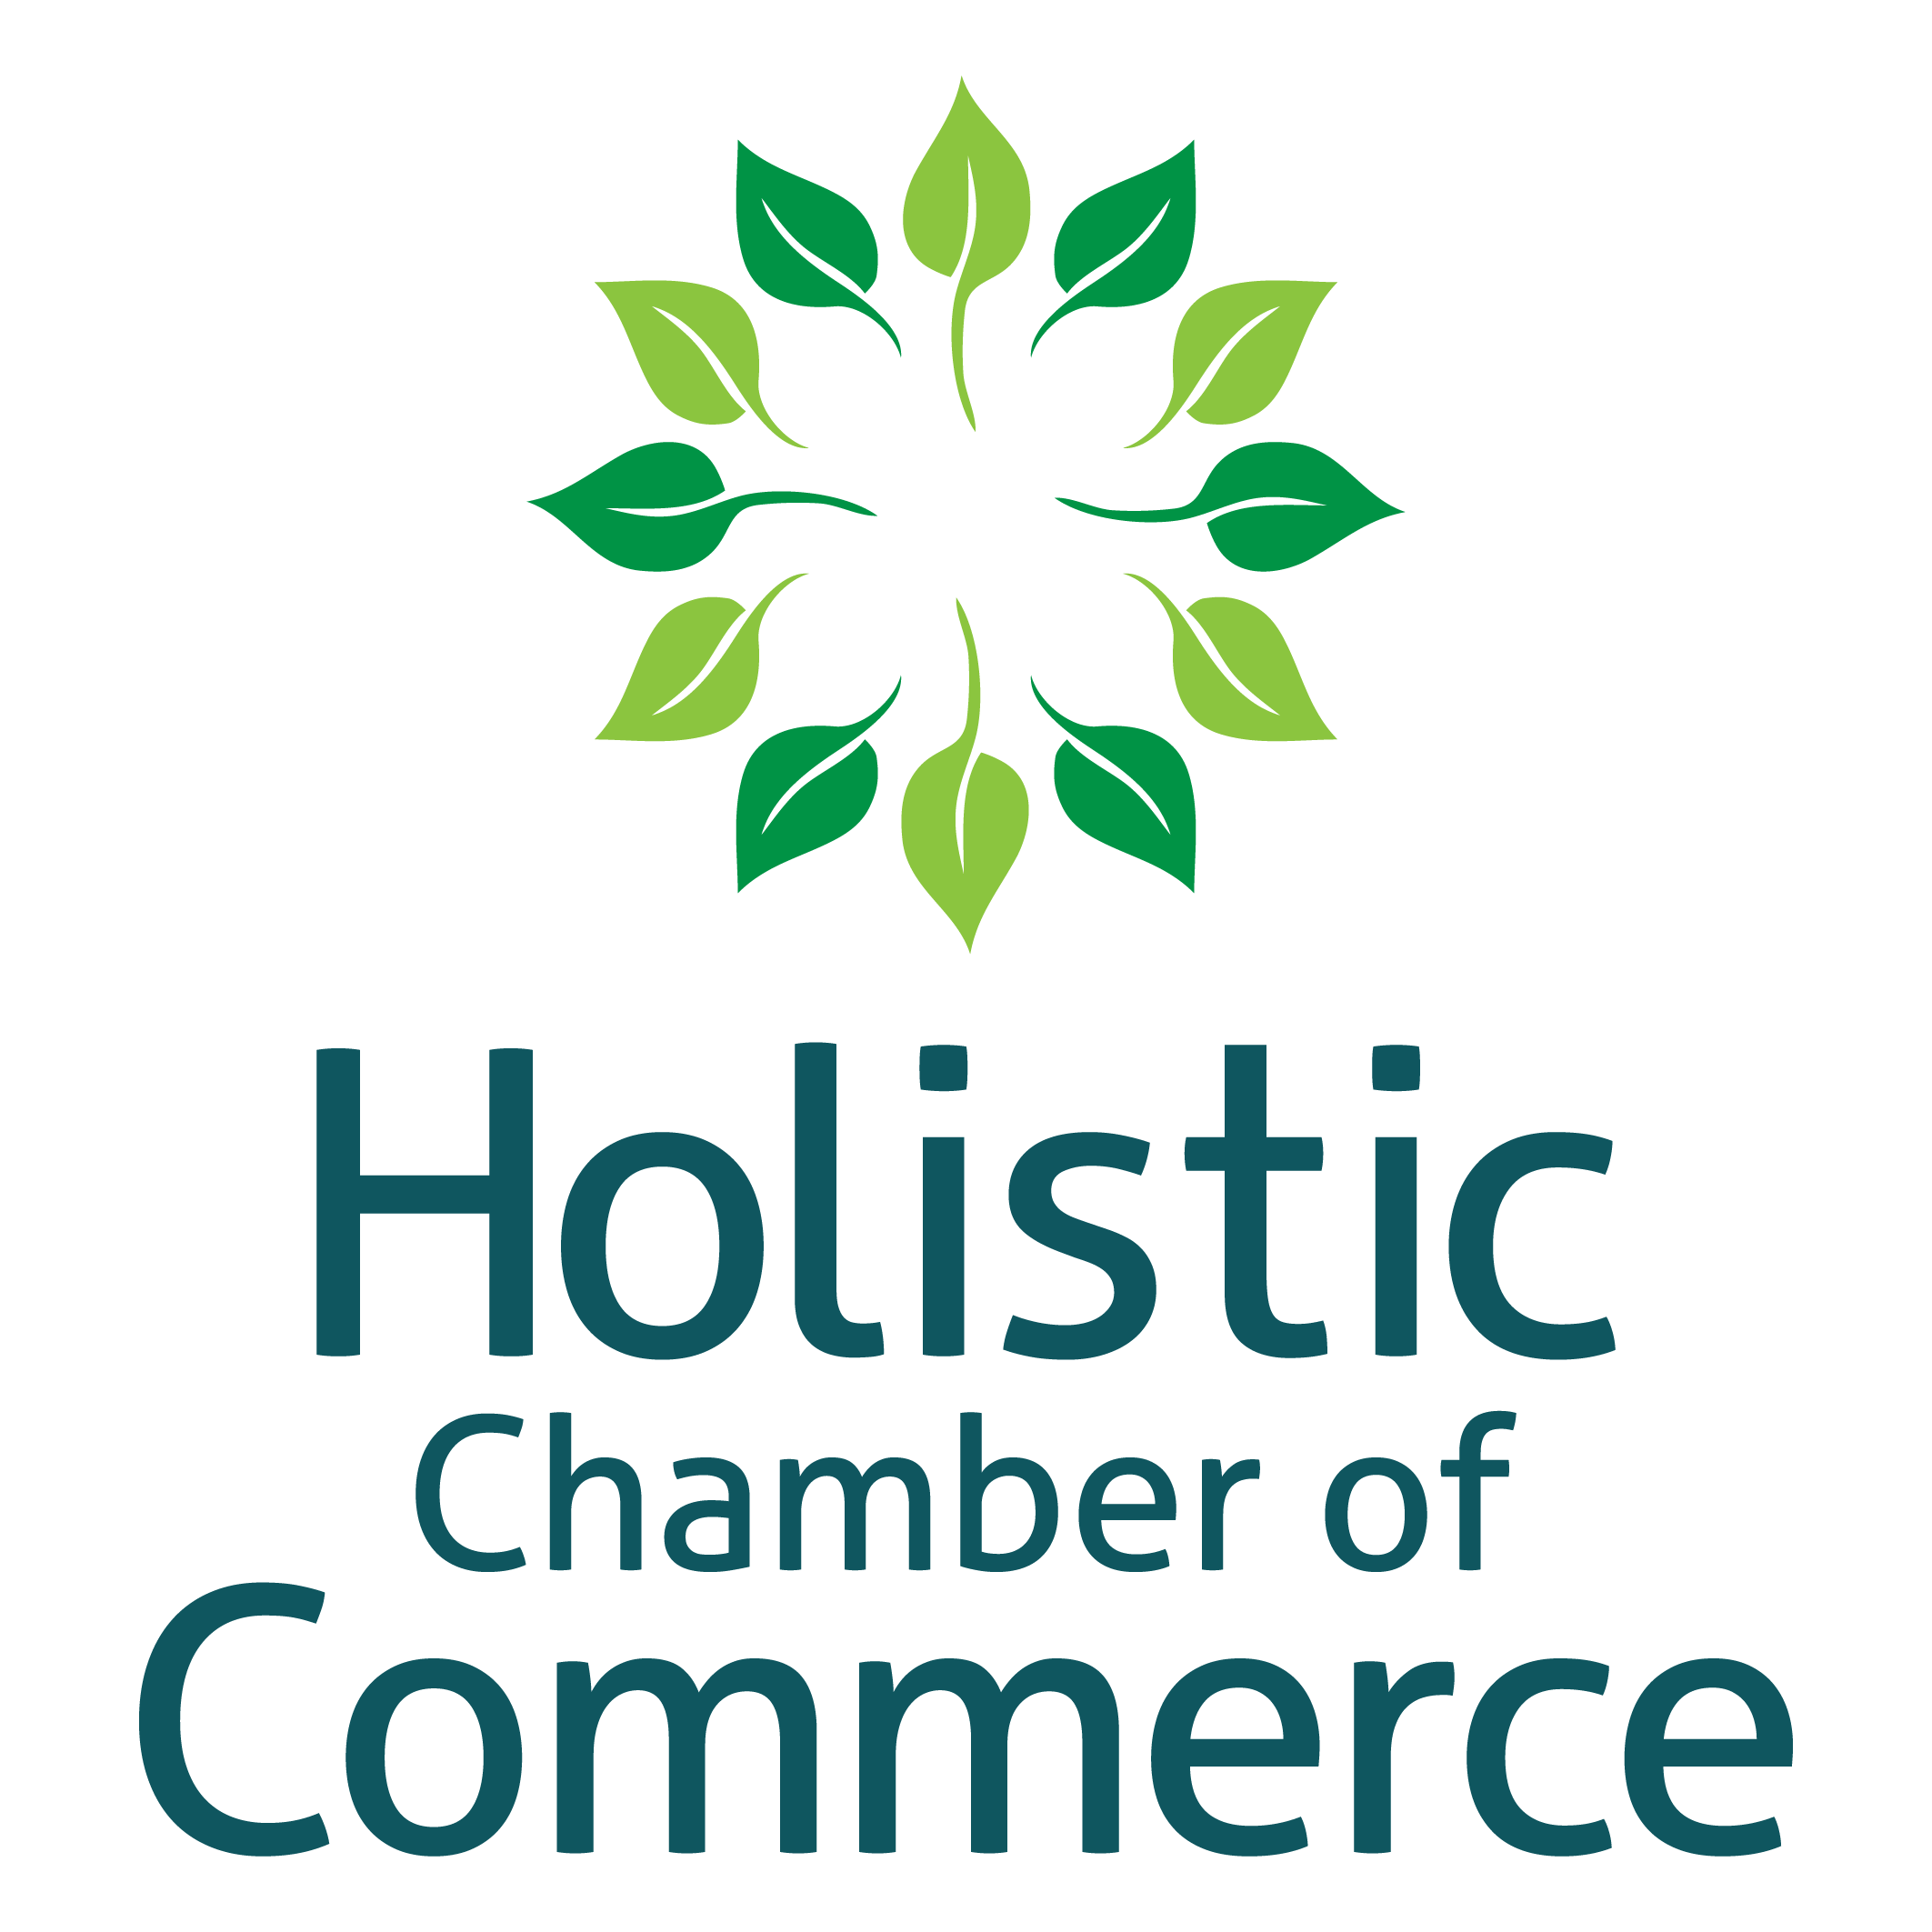 Holistic chamber of commerce